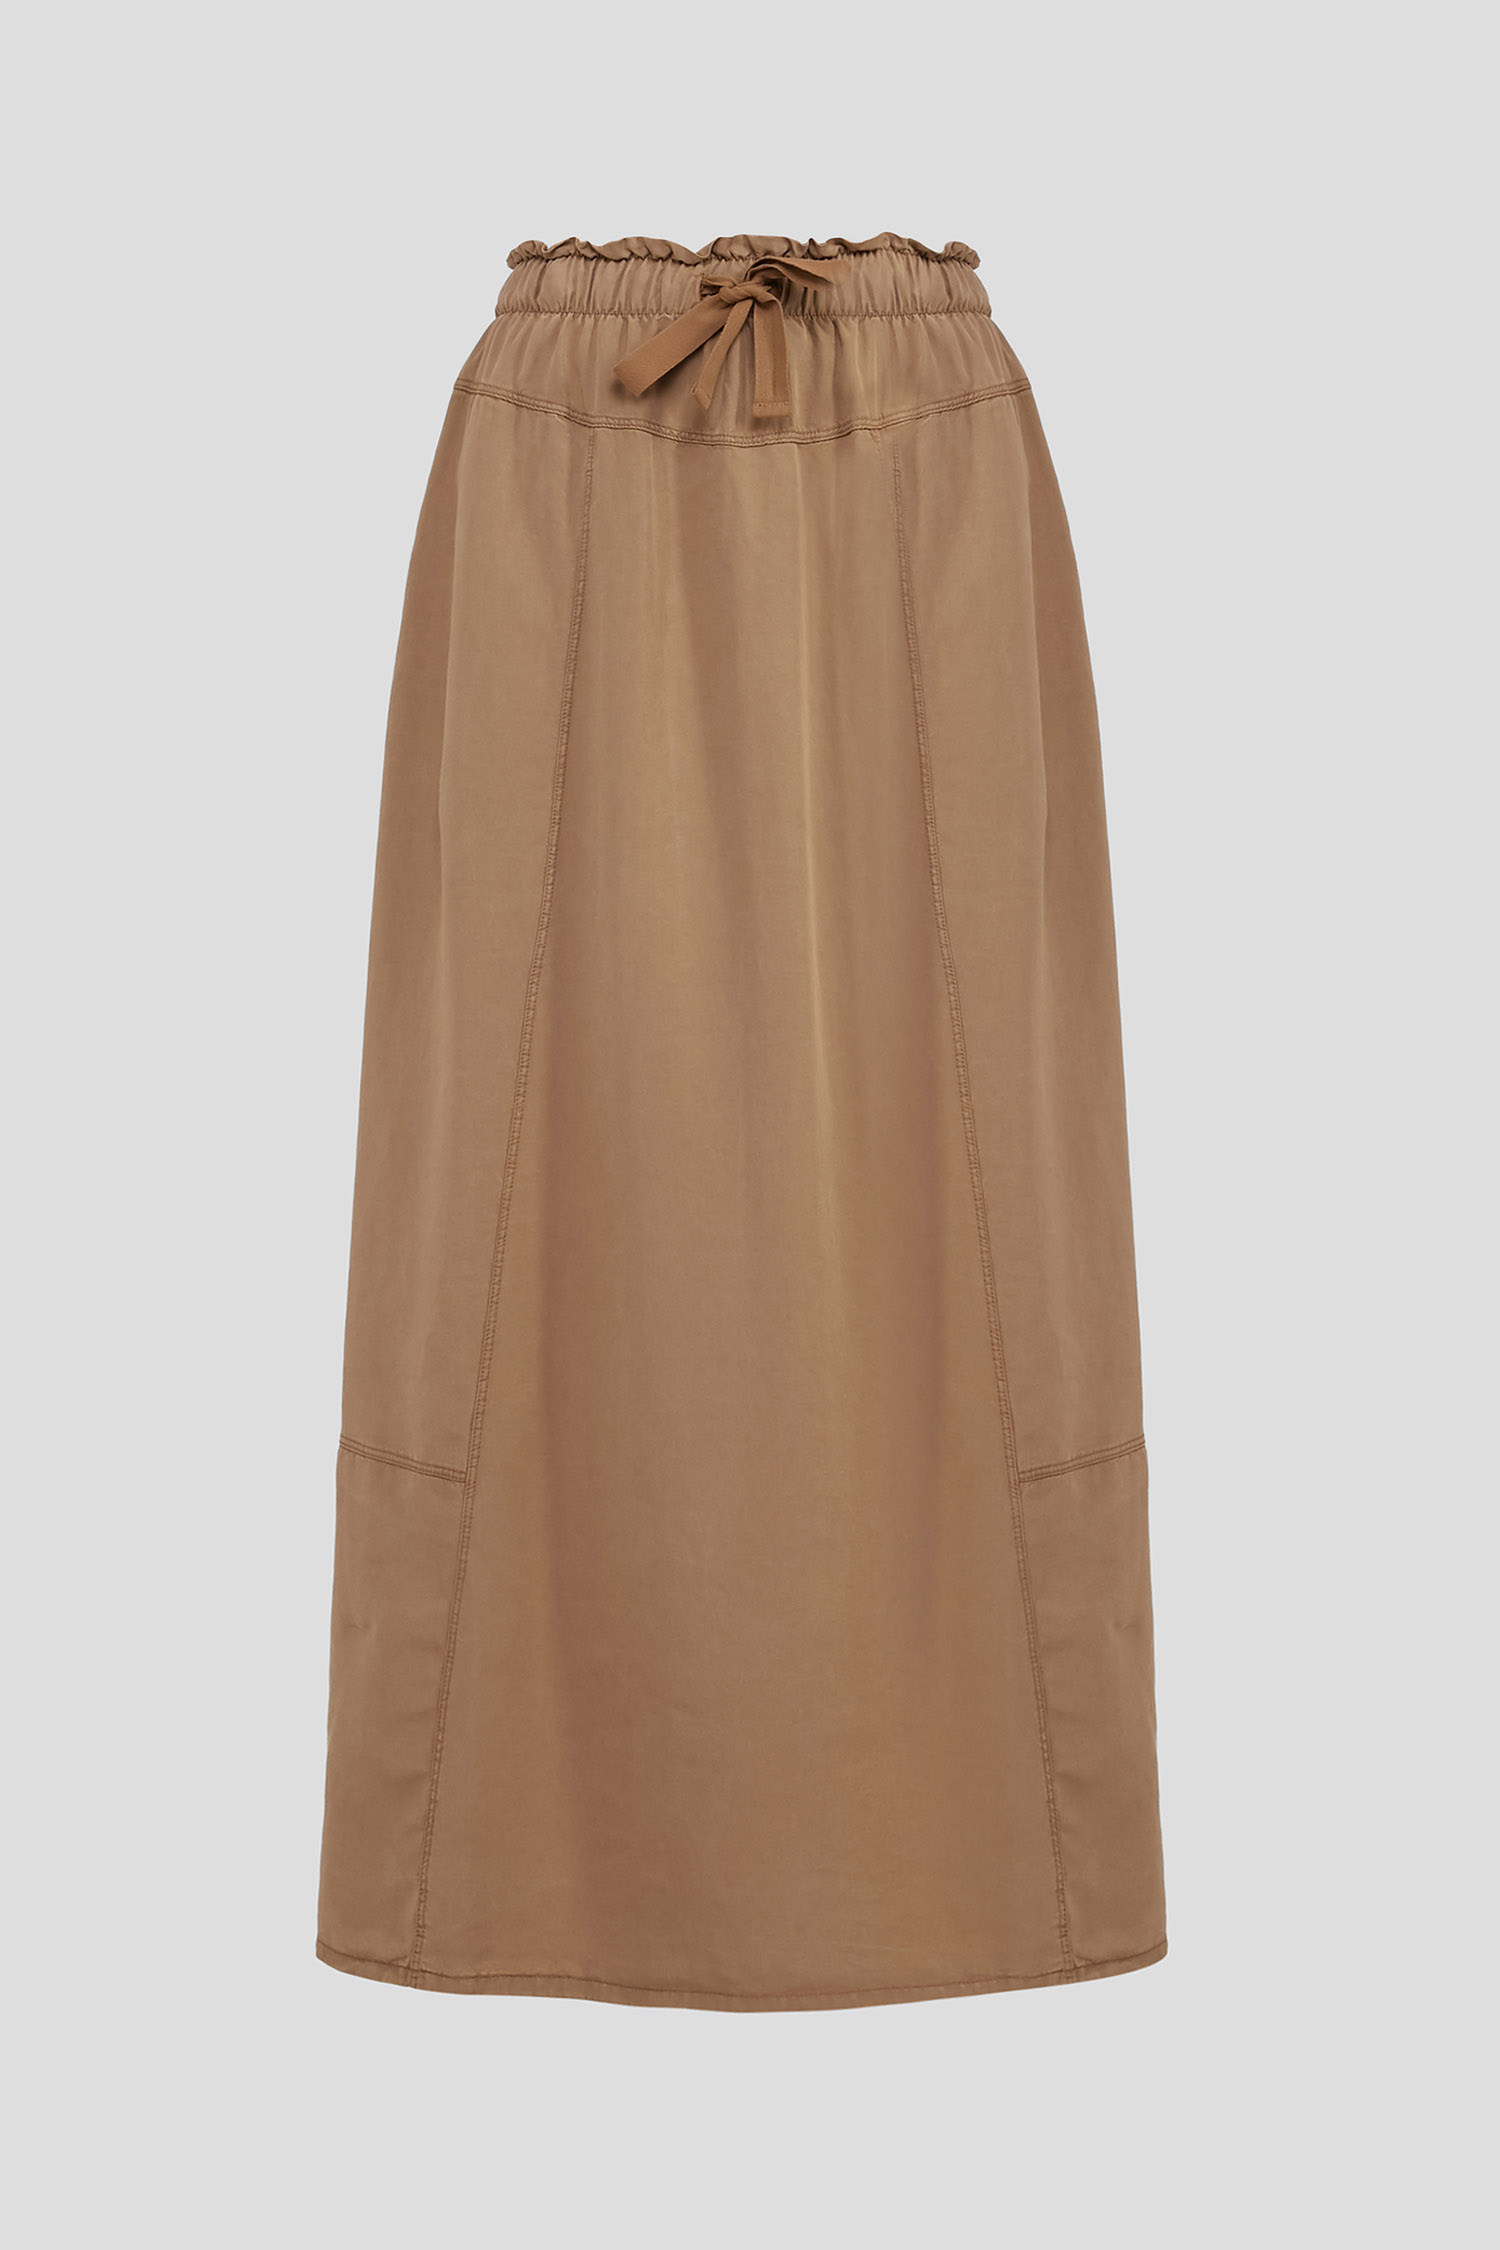 Женская коричневая юбка 1